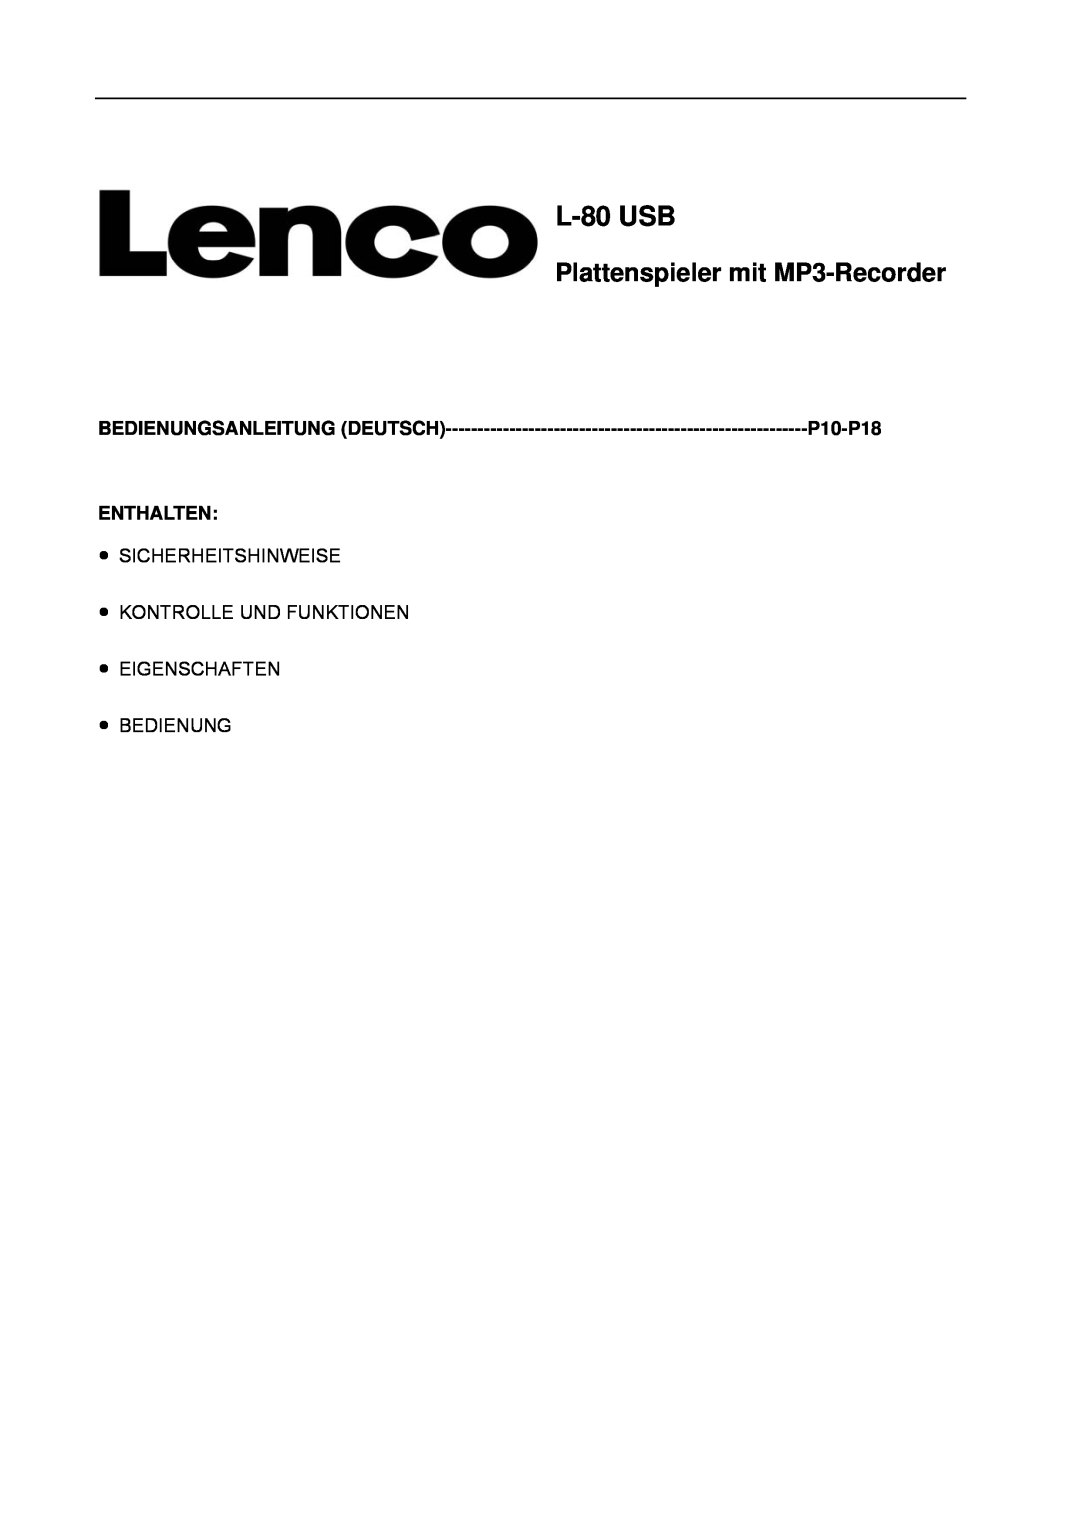 Lenco Marine L-80 USB user manual L-80USB, Plattenspieler mit MP3-Recorder, P10-P18, Enthalten, Bedienungsanleitung Deutsch 